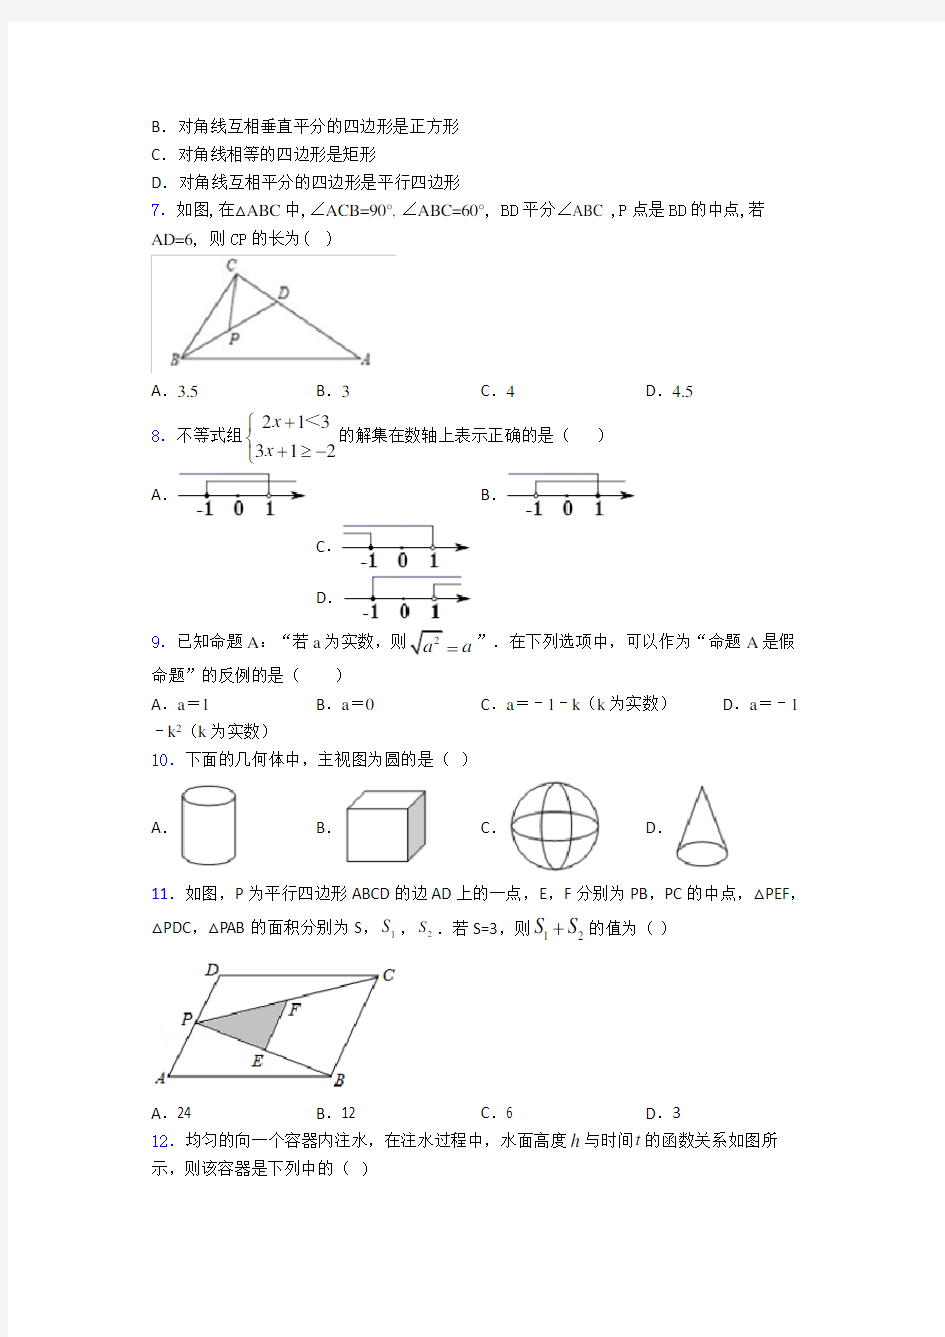 2019-2020上海建平中学中考数学一模试题(附答案)